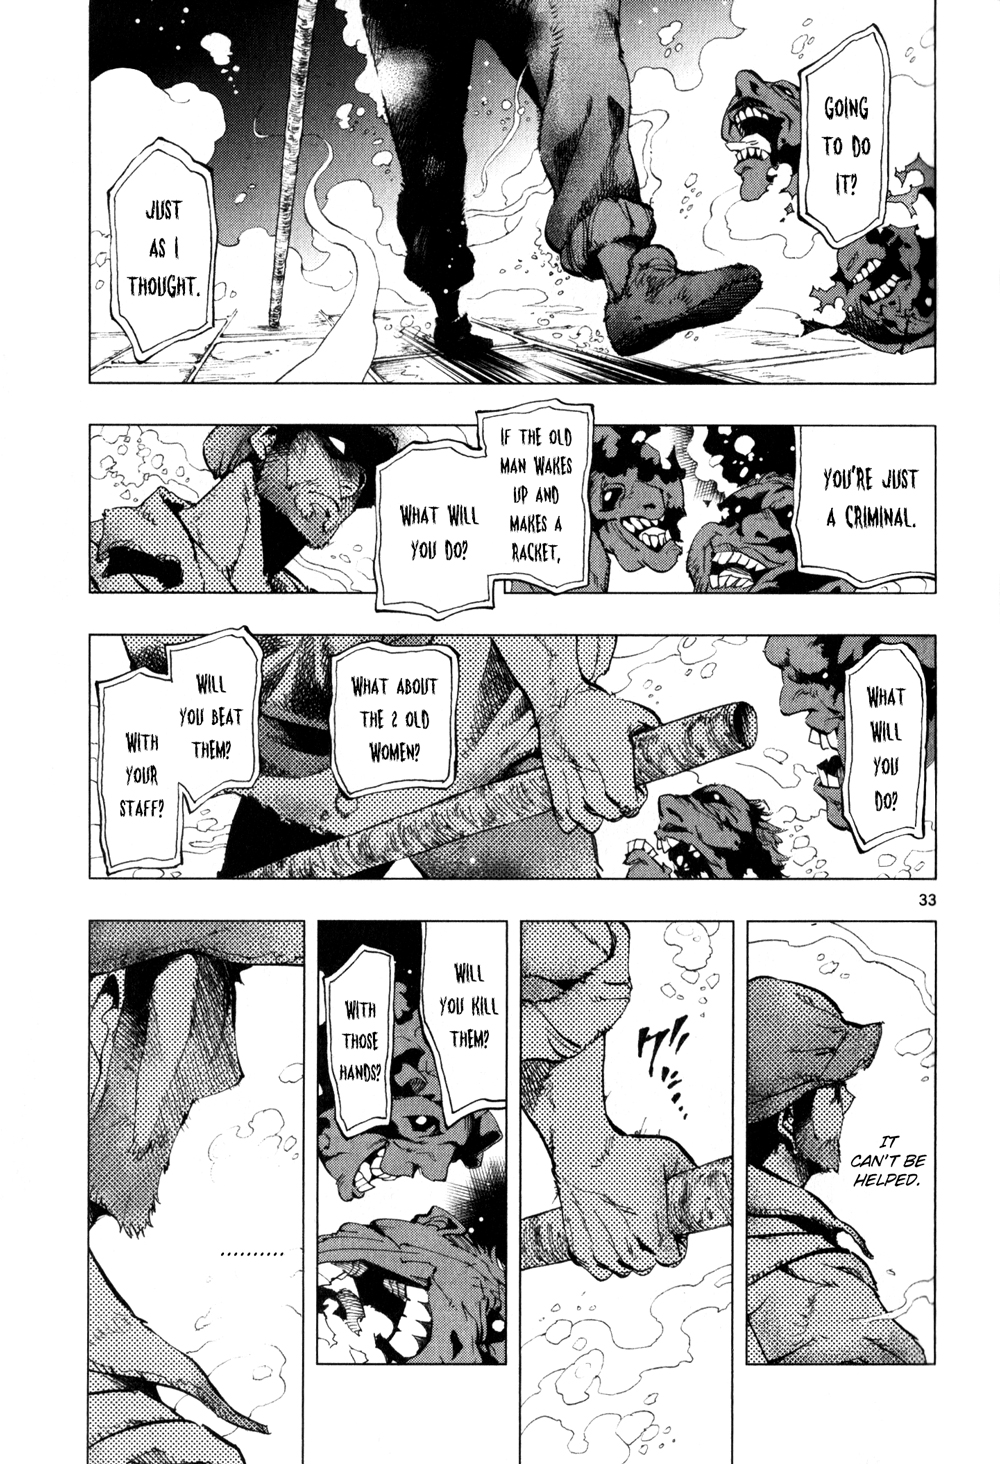 Les Miserables (ARAI Takahiro) Vol.1 Ch.3